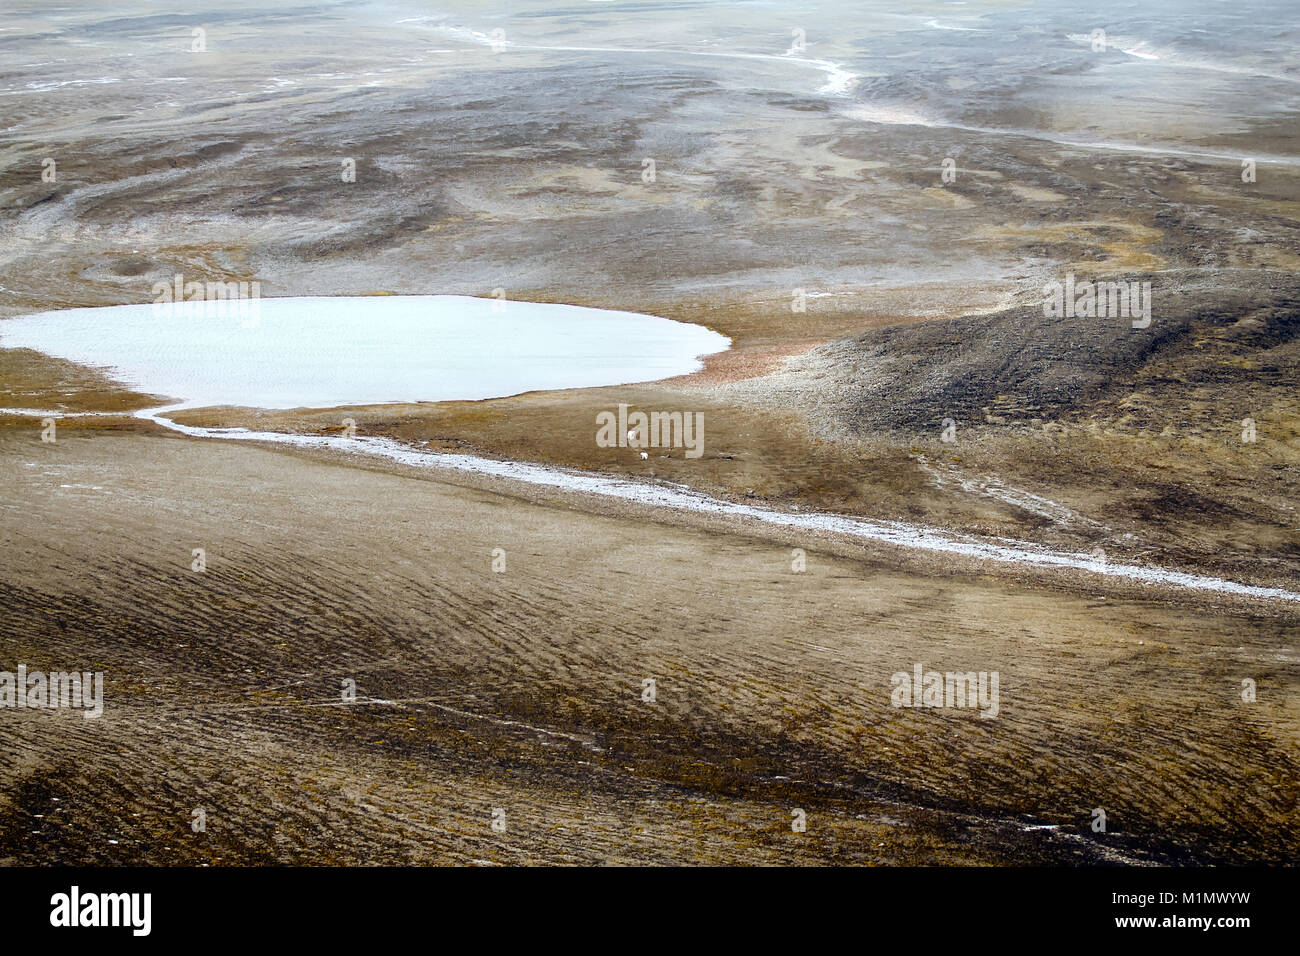 Arktis (kalt) Wüste. Vegetation versteckt sich nur auf Gebiete vor Wind  geschützt, wenn überschüssige Feuchtigkeit. Eisbären haben See Karst.  Nowaja Semlja Archipel Stockfotografie - Alamy